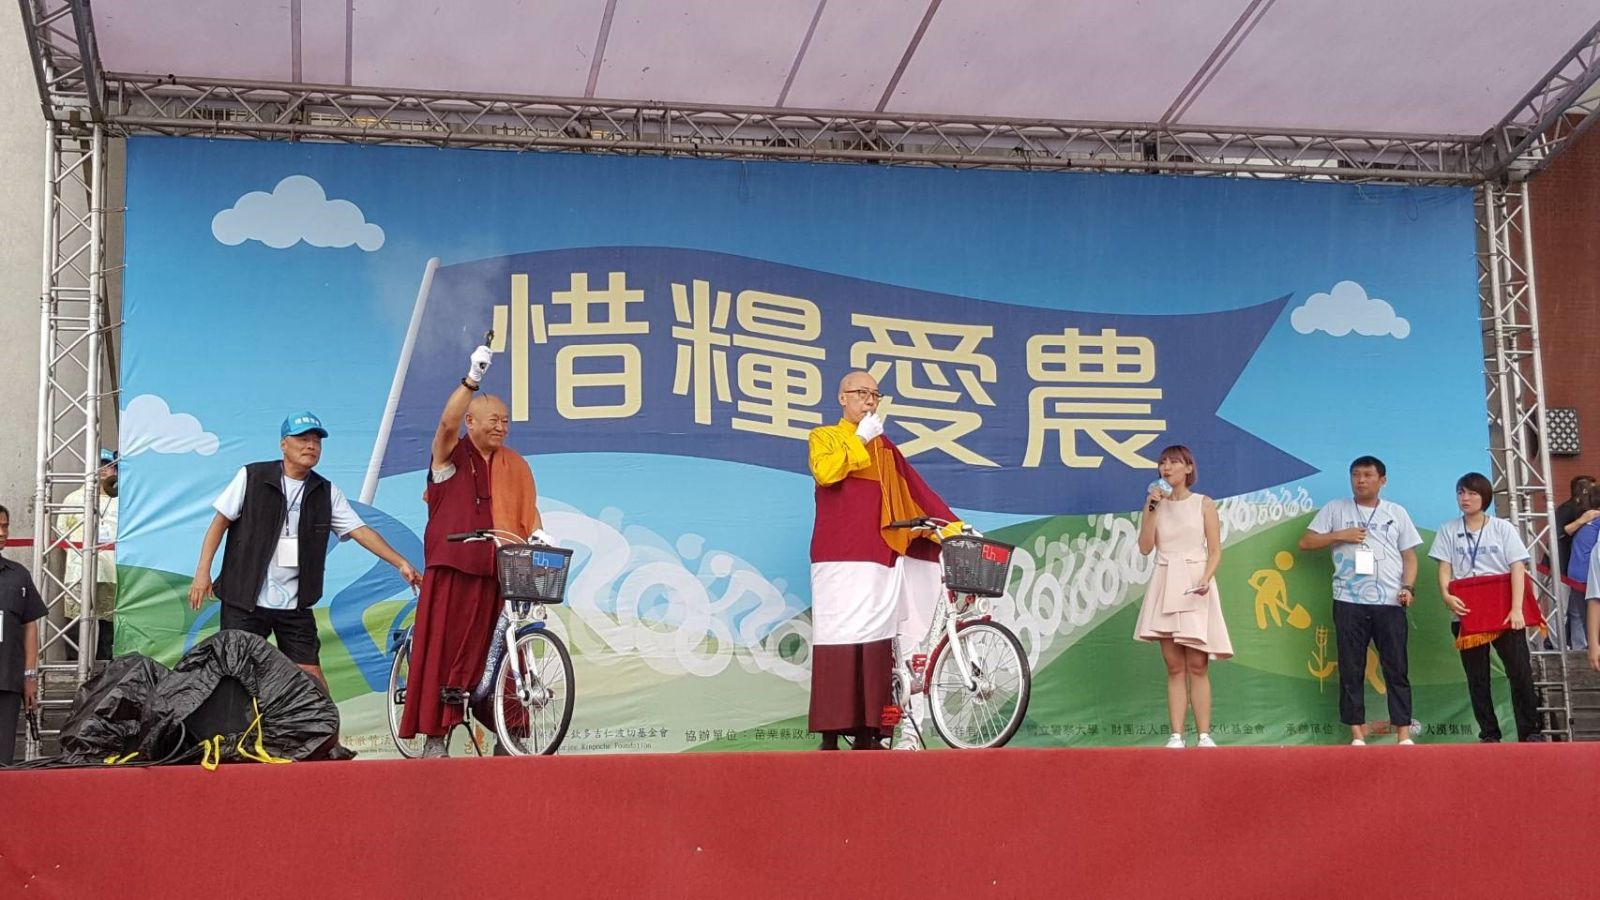 響應世界糧食日 「惜糧愛農」自行車活動熱情開騎  | 文章內置圖片